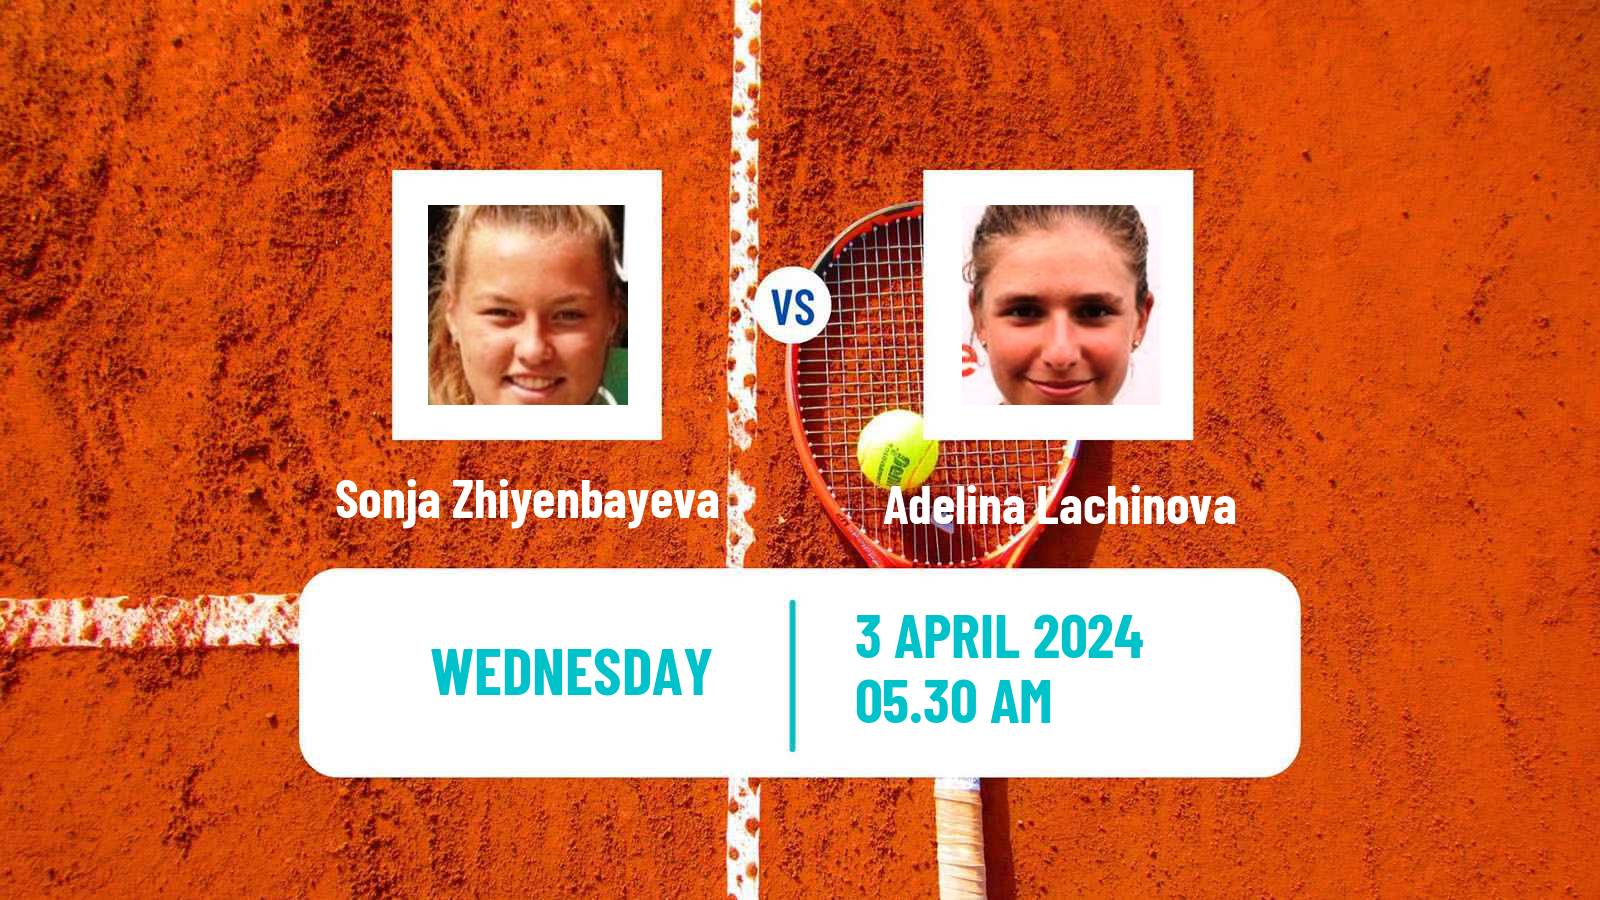 Tennis ITF W15 Antalya 8 Women Sonja Zhiyenbayeva - Adelina Lachinova